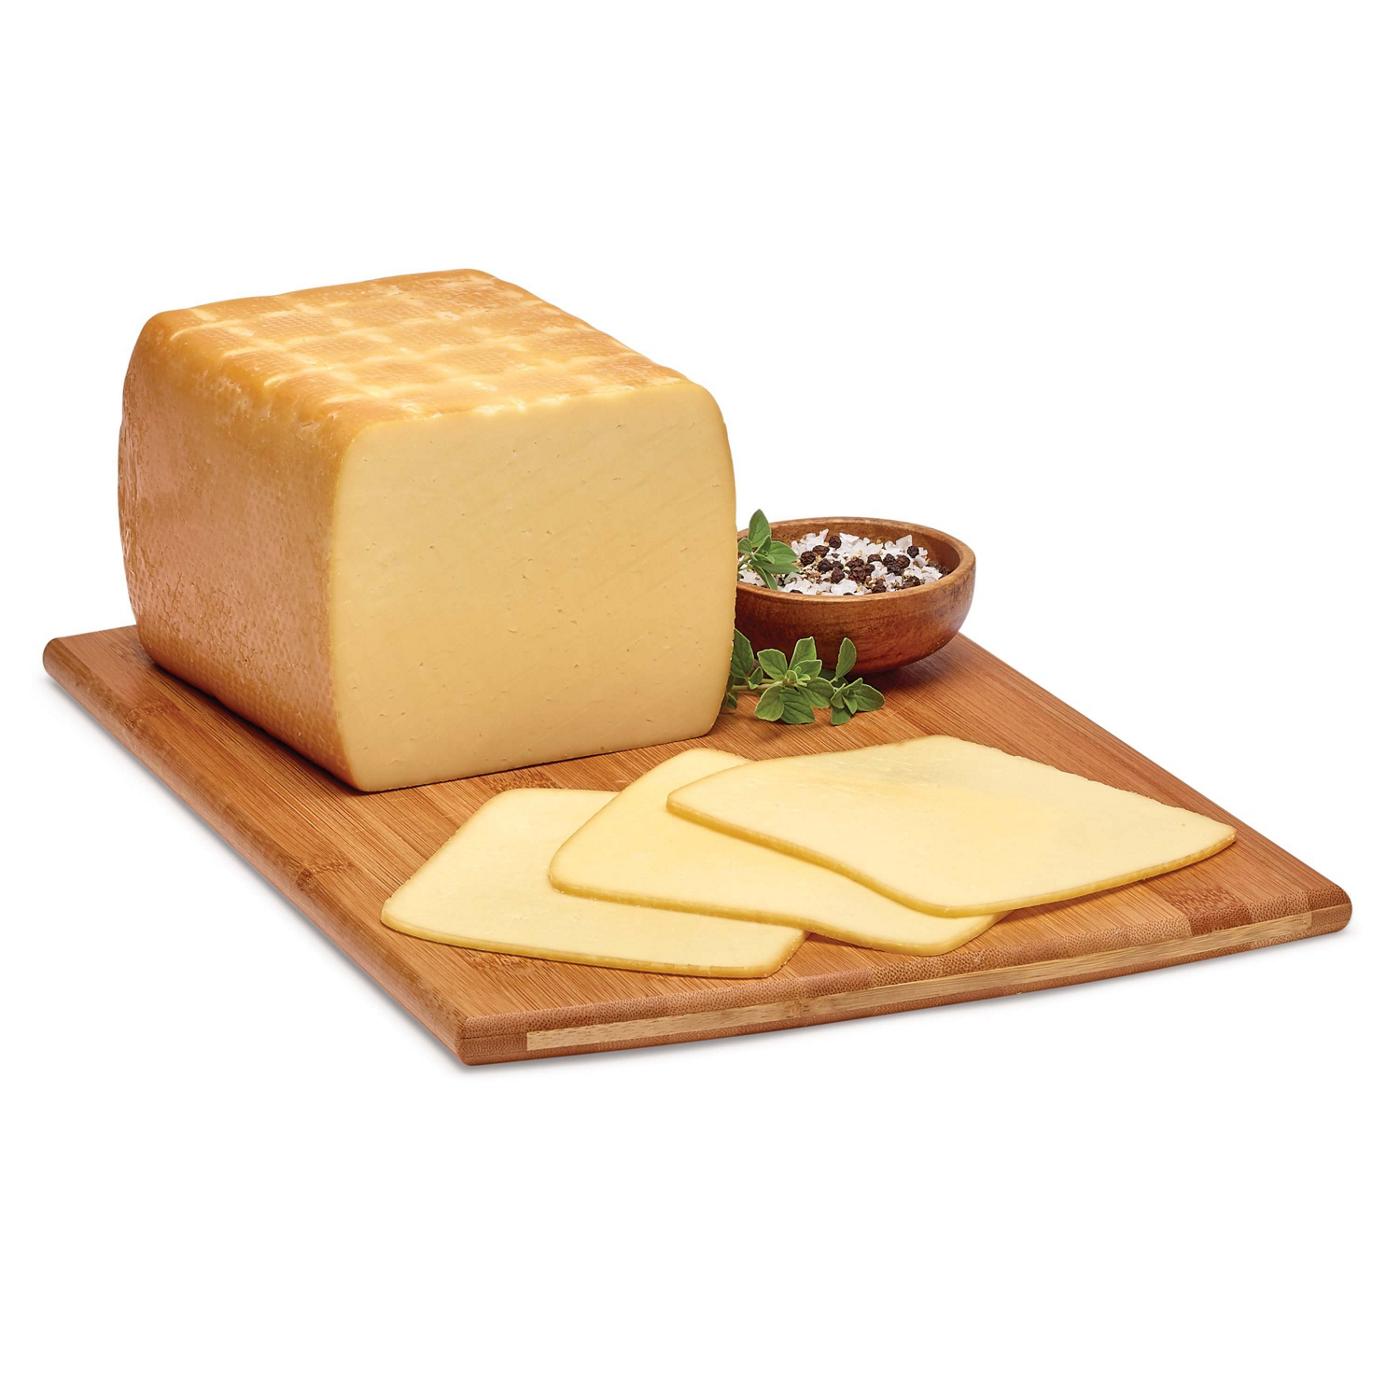 H-E-B Deli Sliced Post Oak Smoked Havarti Cheese; image 1 of 2